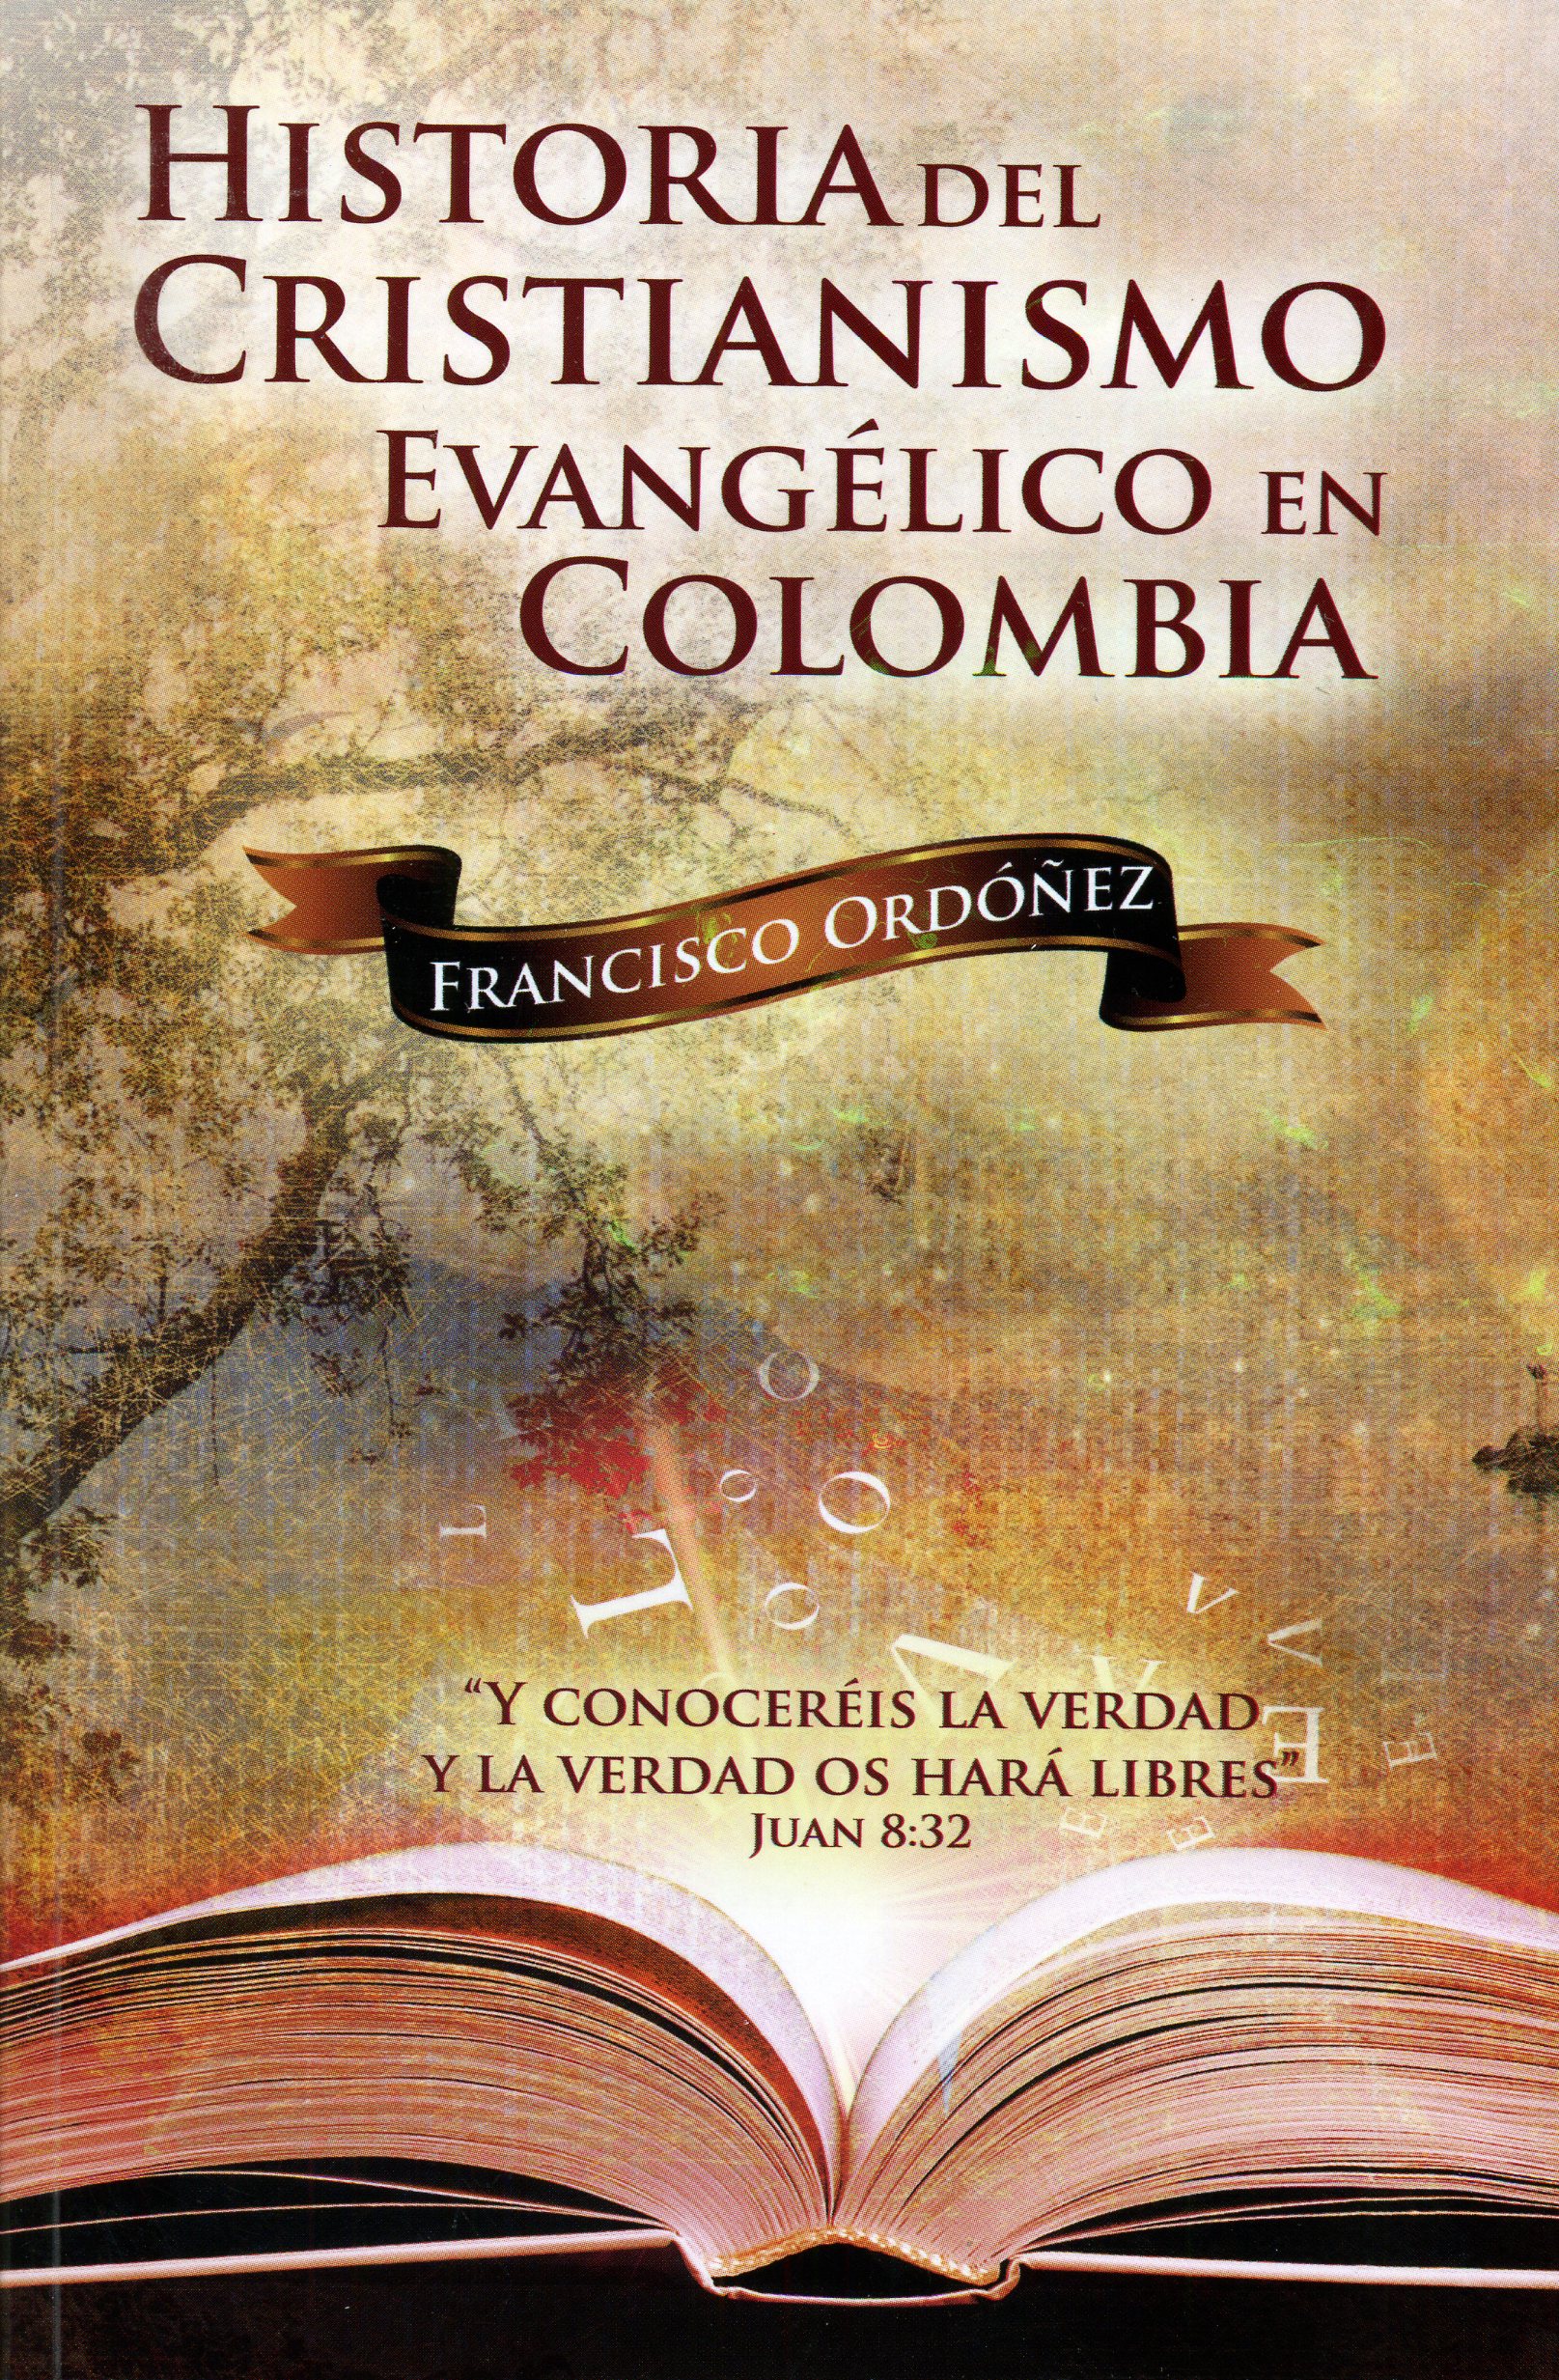 Historia del cristianismo evangélico en Colombia